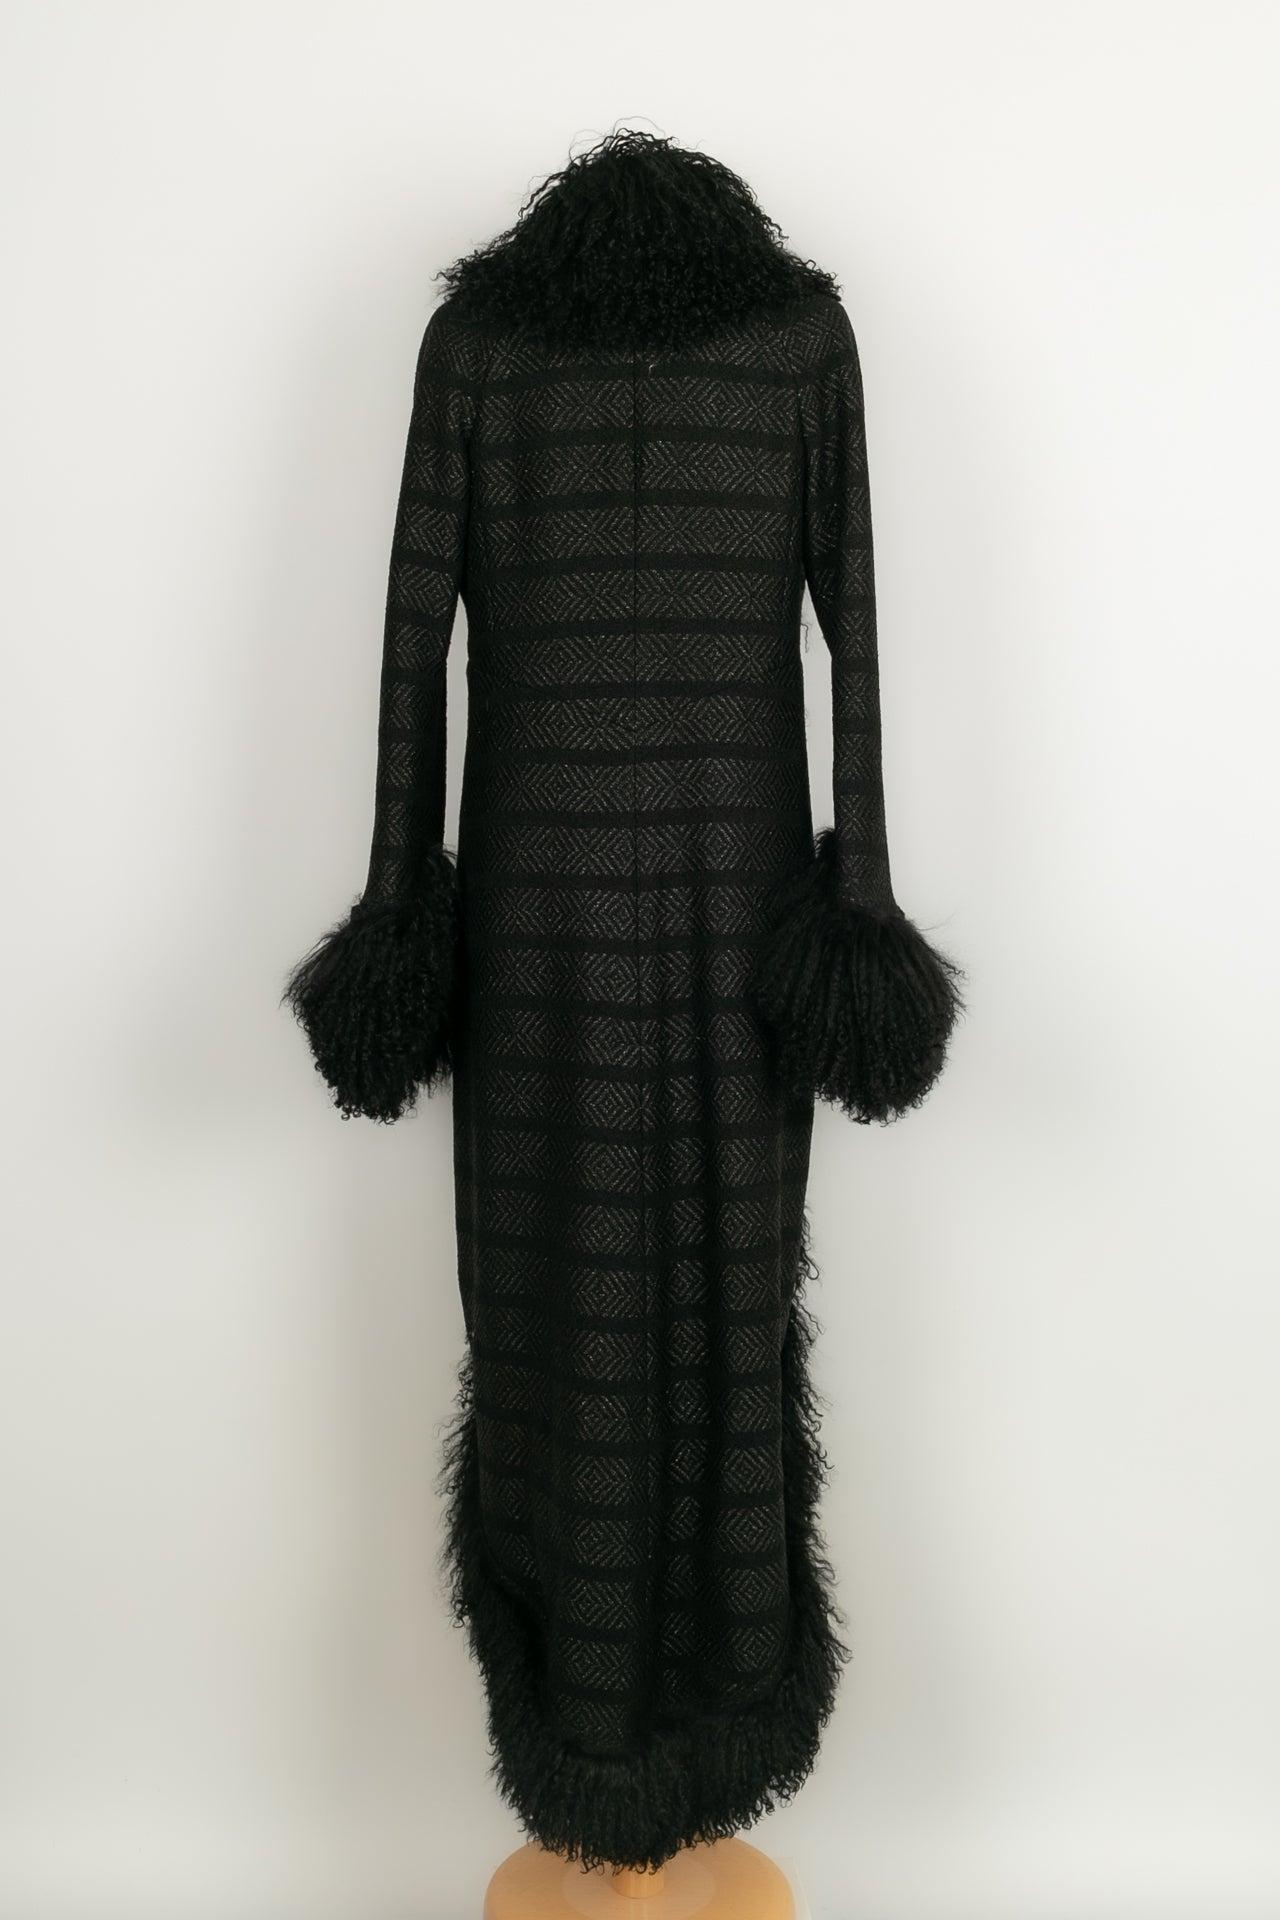 Women's Chanel Coat in Black Wool, 2008